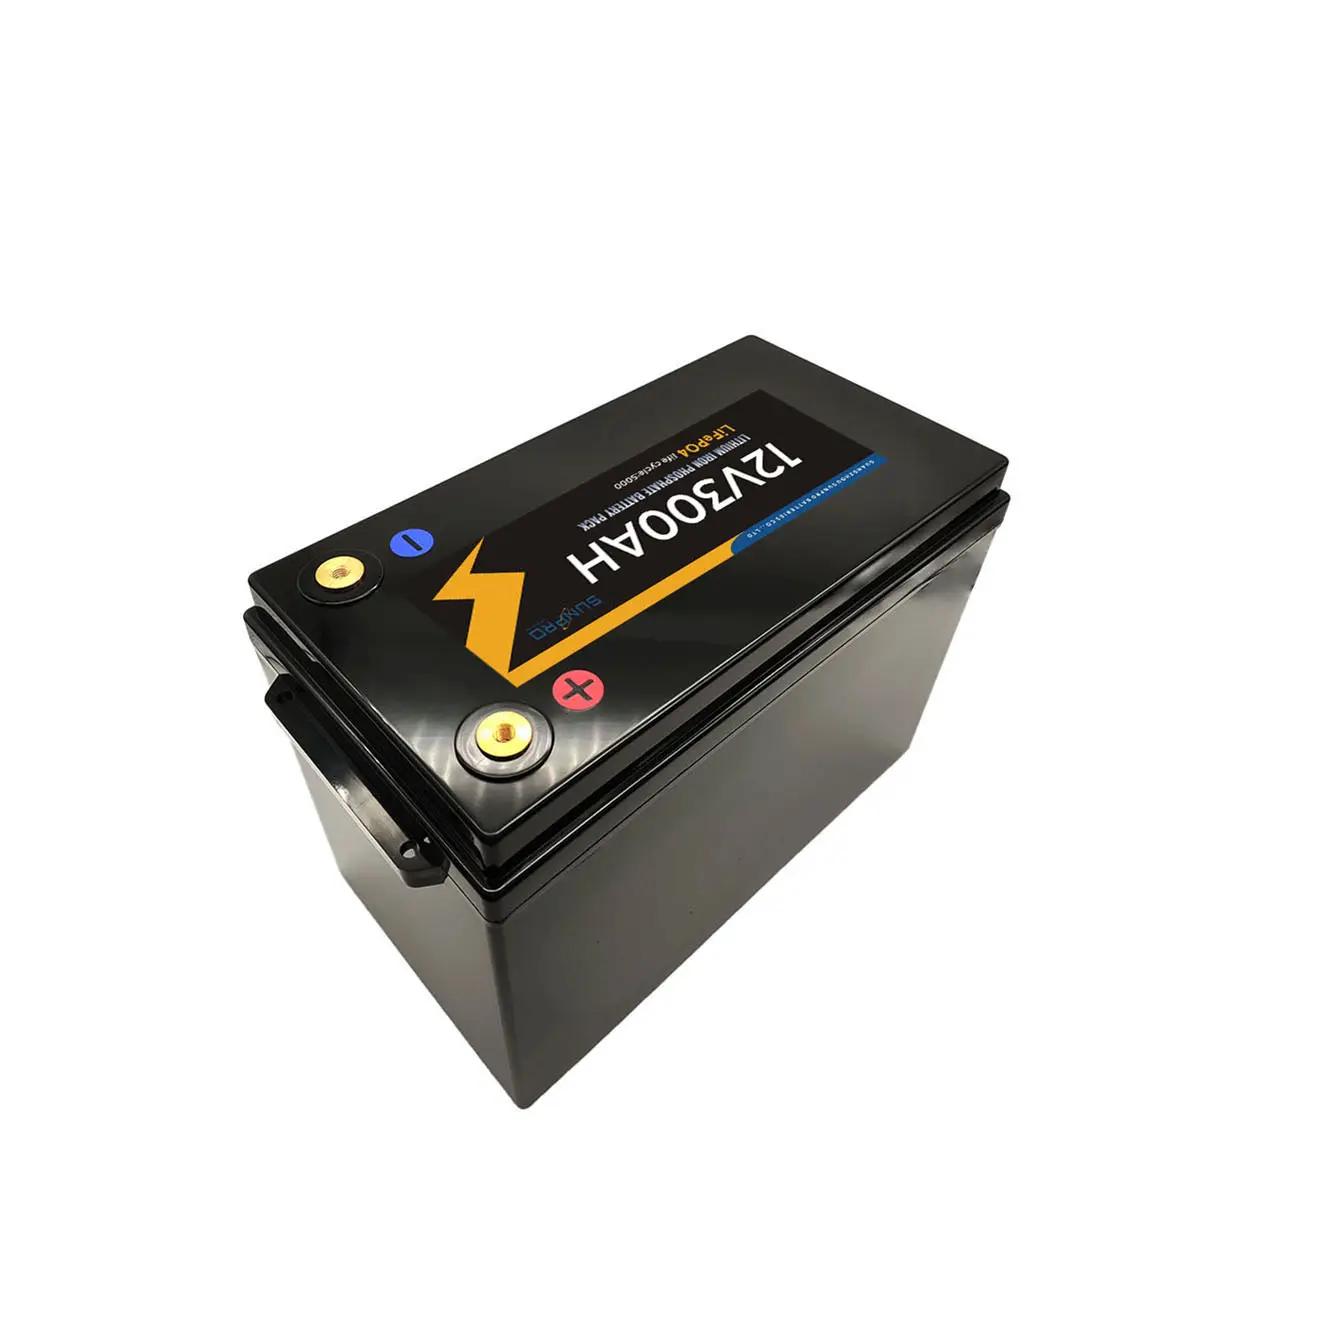 Baterai lithium lifepo4 12v300ah dapat ditumpuk untuk baterai lithium sistem tenaga surya grid 12v 300ah